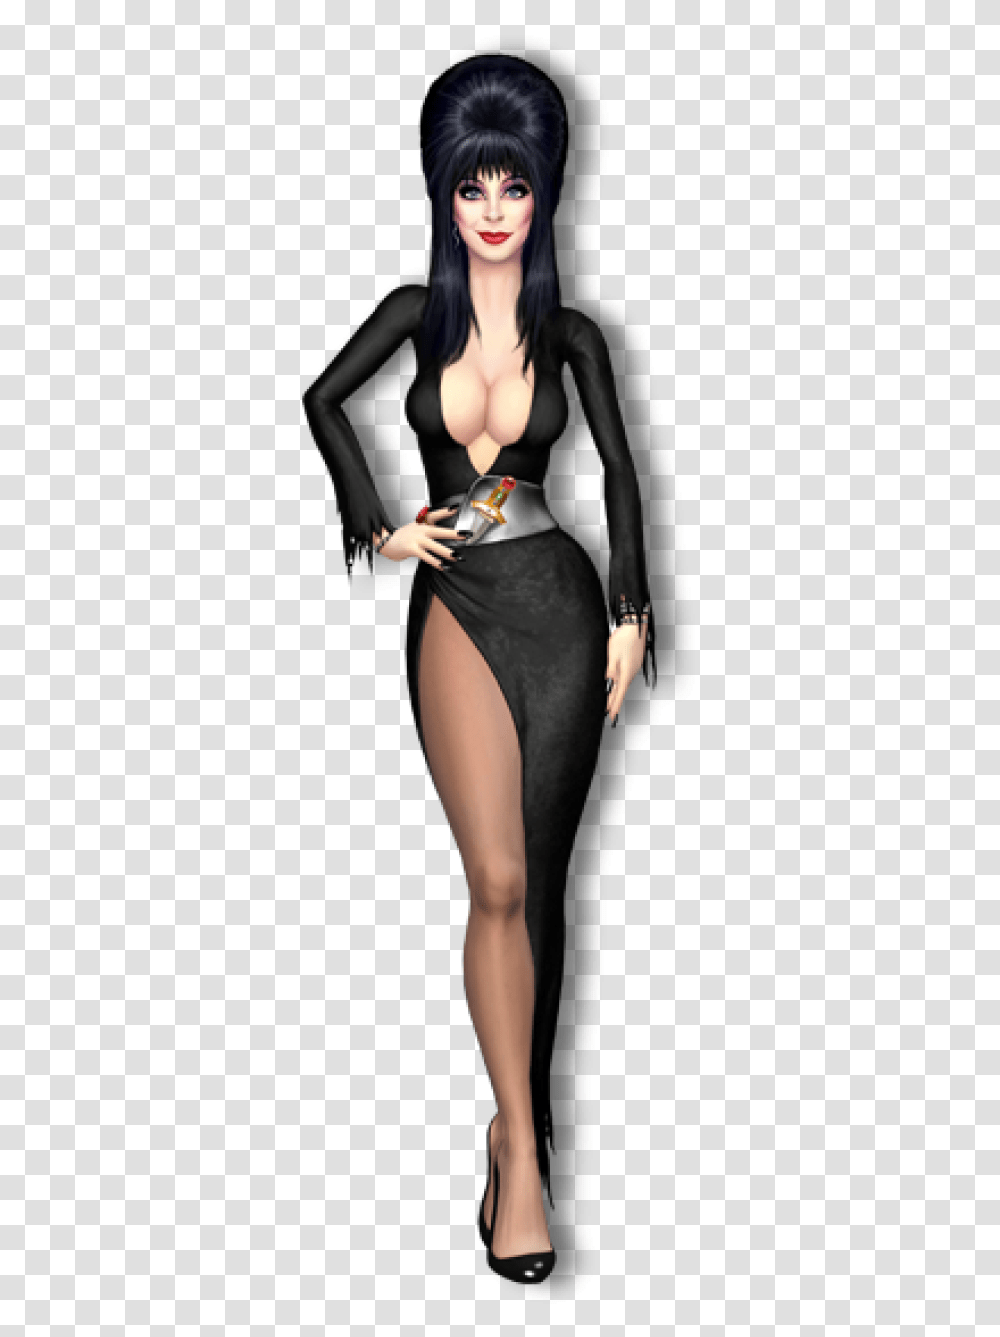 Elvira Elvira Character, Person, Lingerie, Underwear Transparent Png